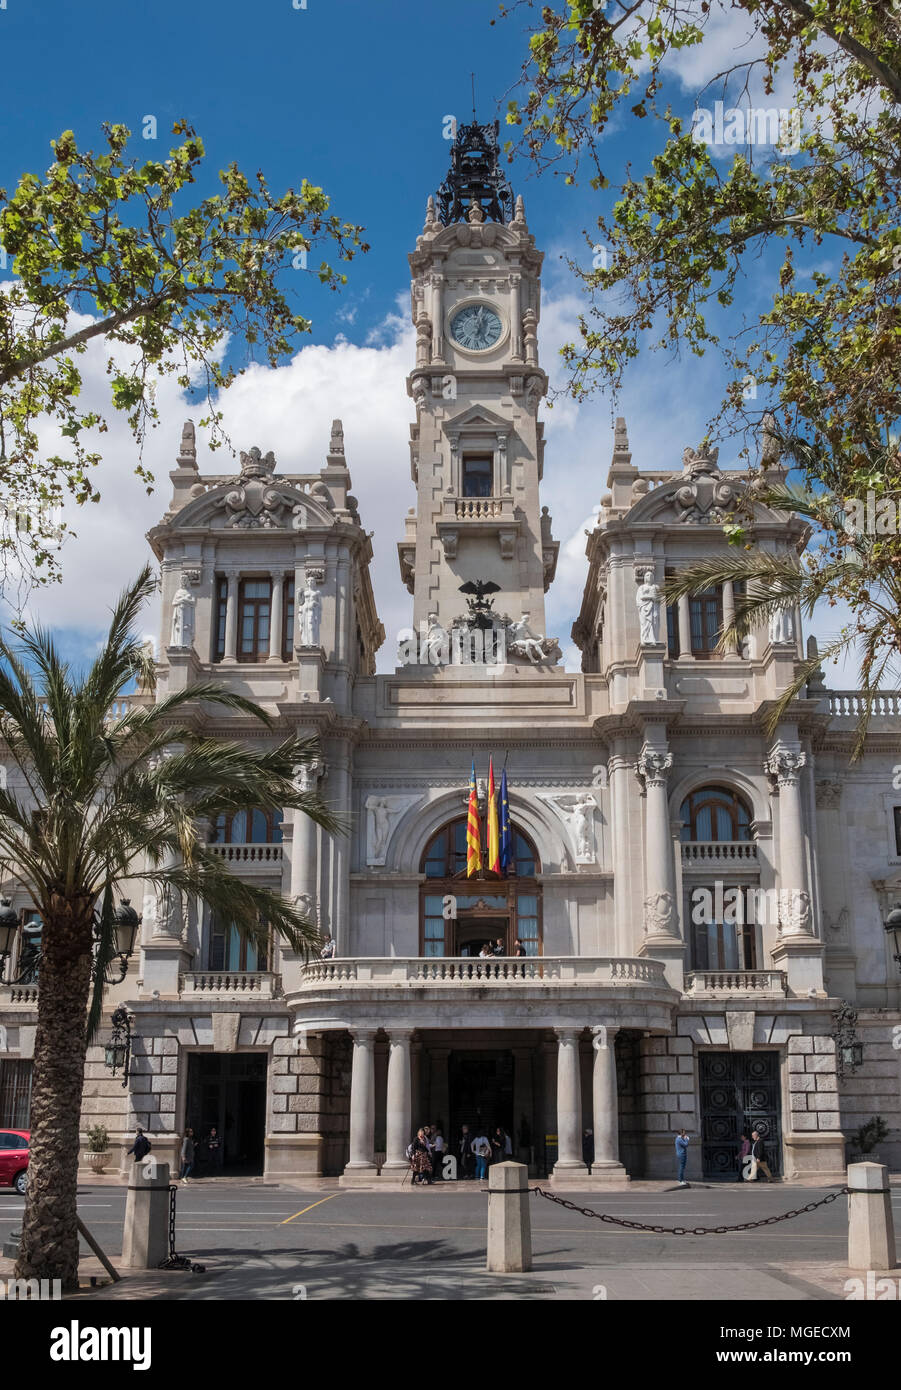 Fassade des Ayuntamiento de Valencia (Rathaus), Plaza del Ayuntamiento, Valencia, Spanien. Stockfoto